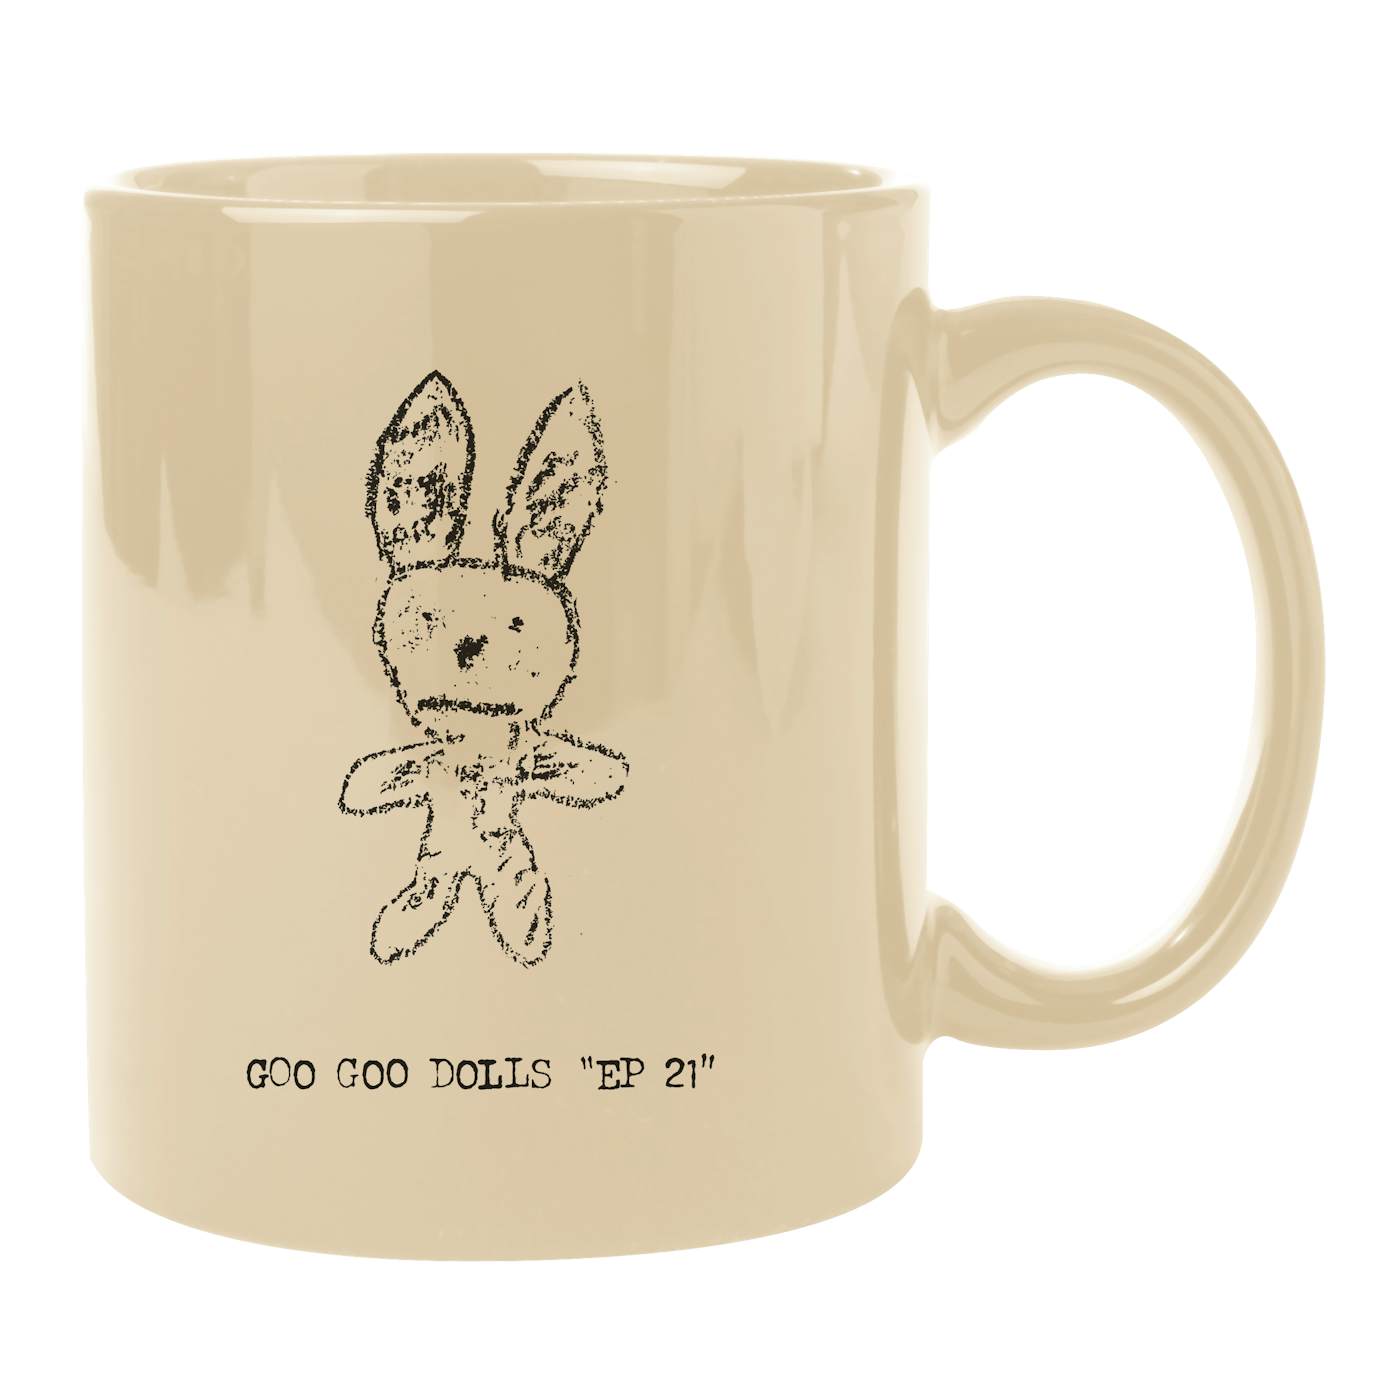 The Goo Goo Dolls Bunny Mug